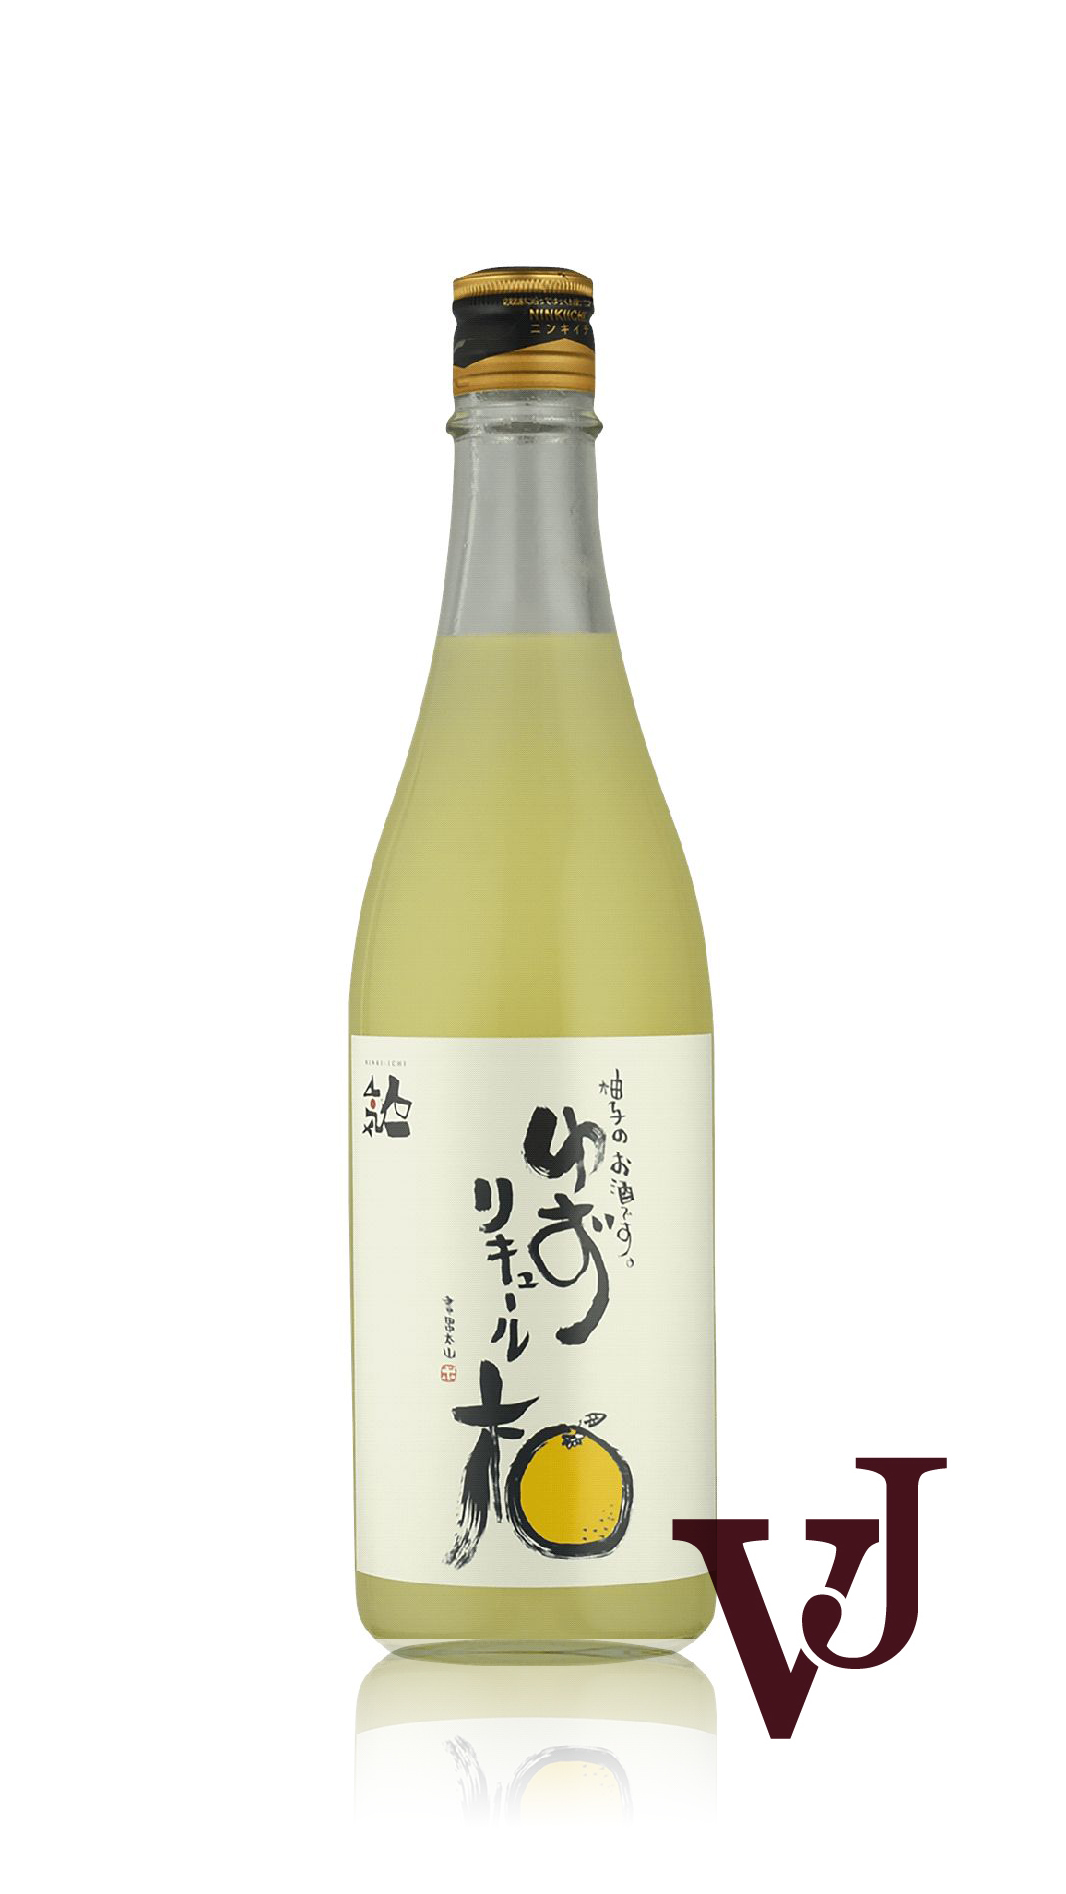 Övrigt vin - Ninki-Ichi Yuzu Shu artikel nummer 7657601 från producenten Flying Brewery från området Japan